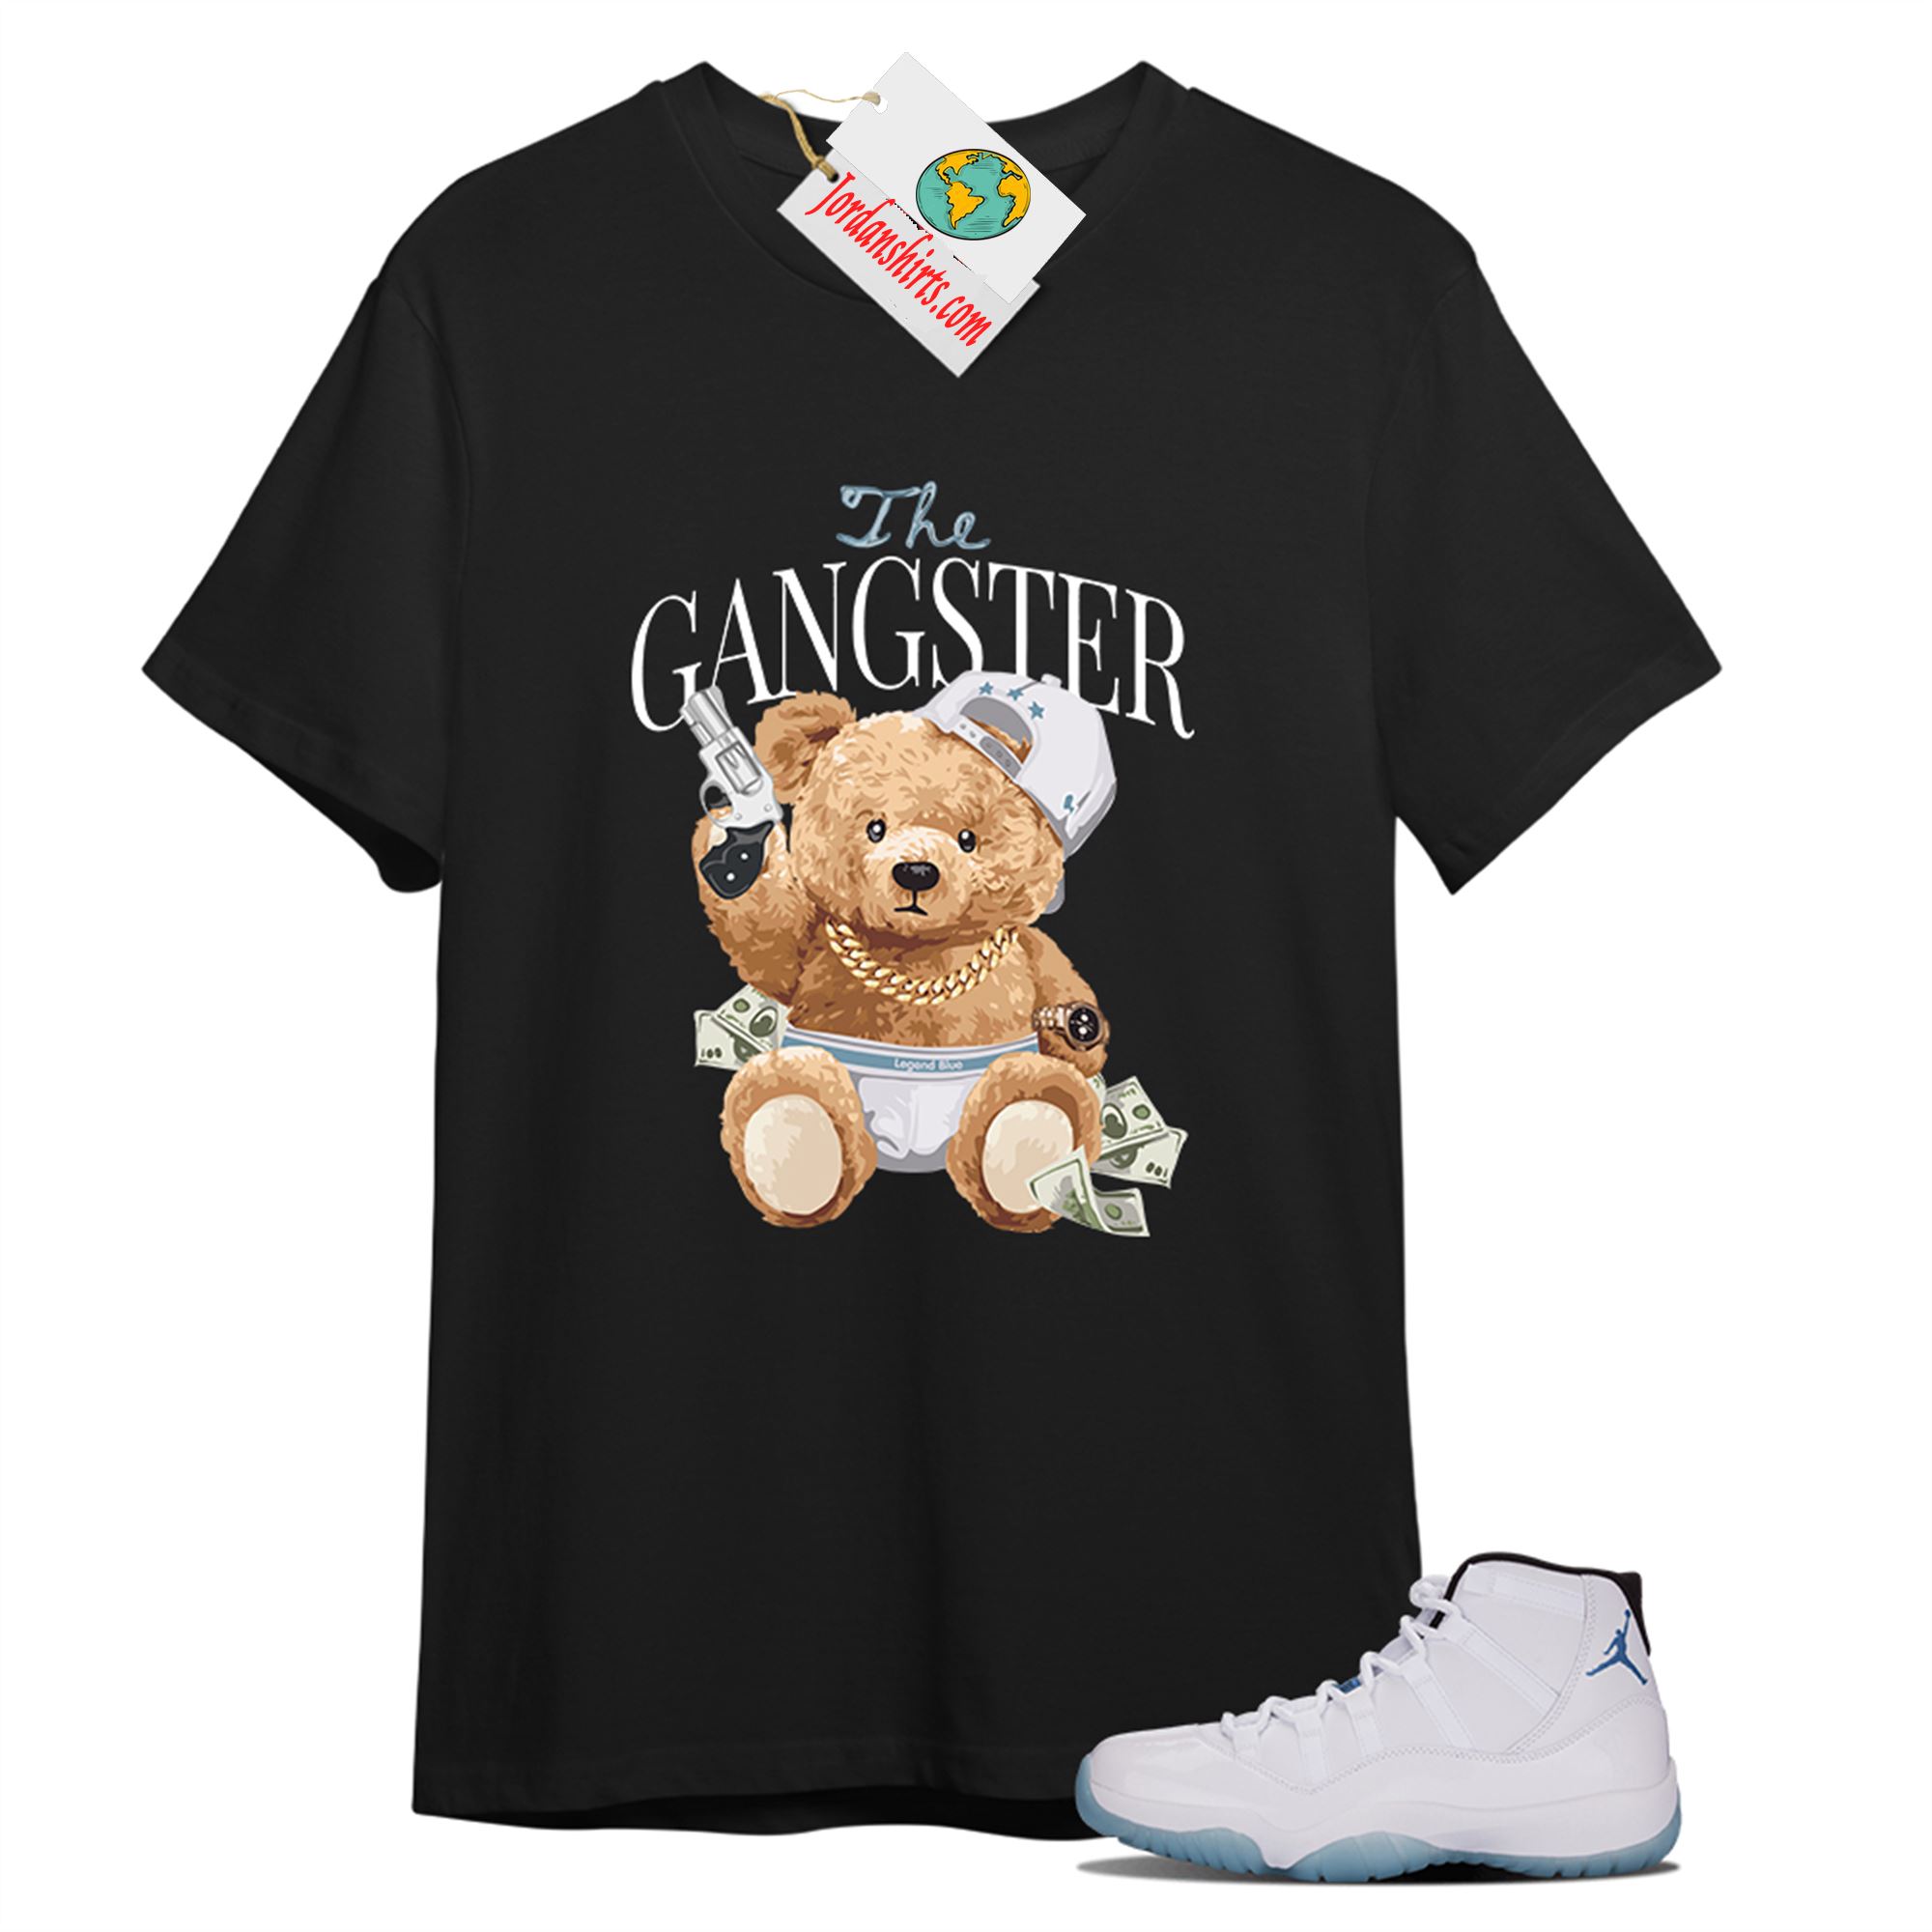 Jordan 11 Shirt, Teddy Bear The Gangster Black T-shirt Air Jordan 11 Legend Blue 11s Size Up To 5xl